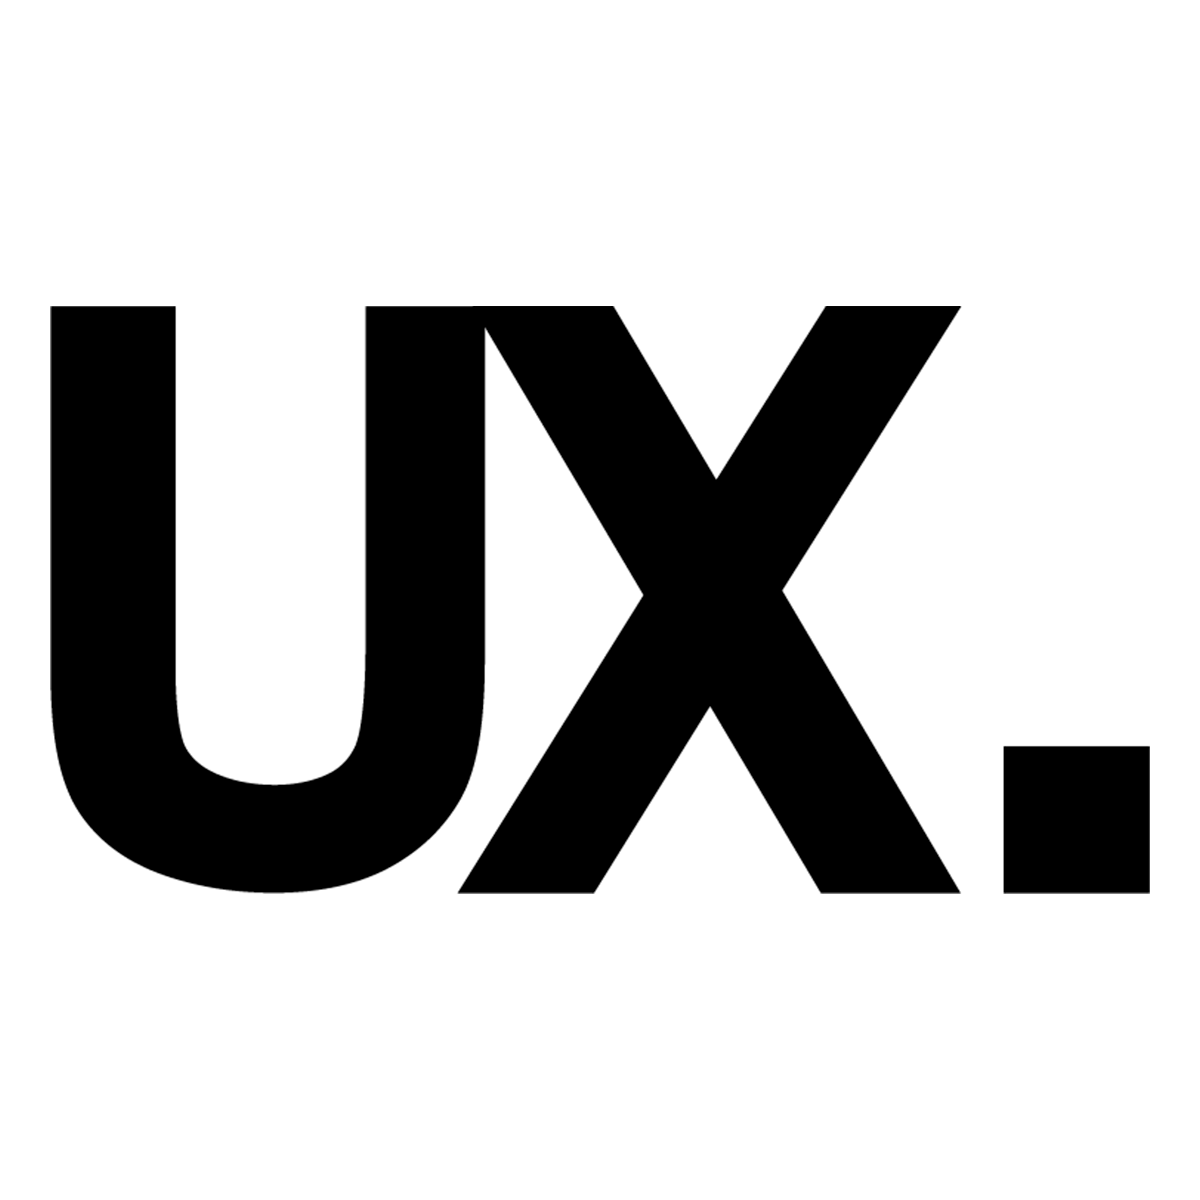 UX Group App